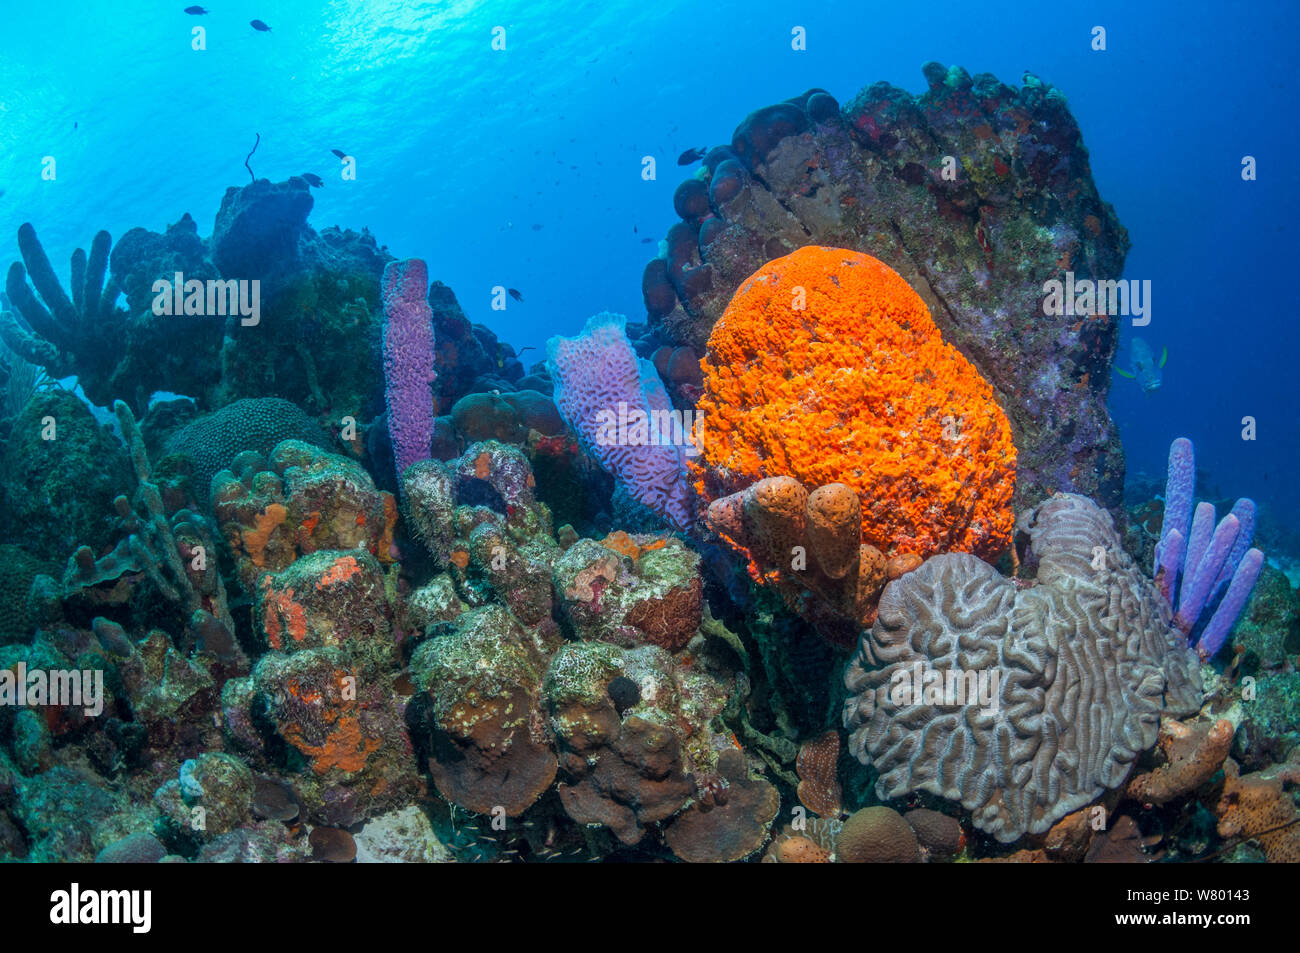 Coral Reef Landschaft mit Orange Elephant ear Schwamm (Agelas clathrodes), Herd-pipe Schwamm (Aplysina archeri) und Azure vase Schwamm (Callyspongia plicifera) Bonaire, Niederländische Antillen, Karibik, Atlantik. Stockfoto